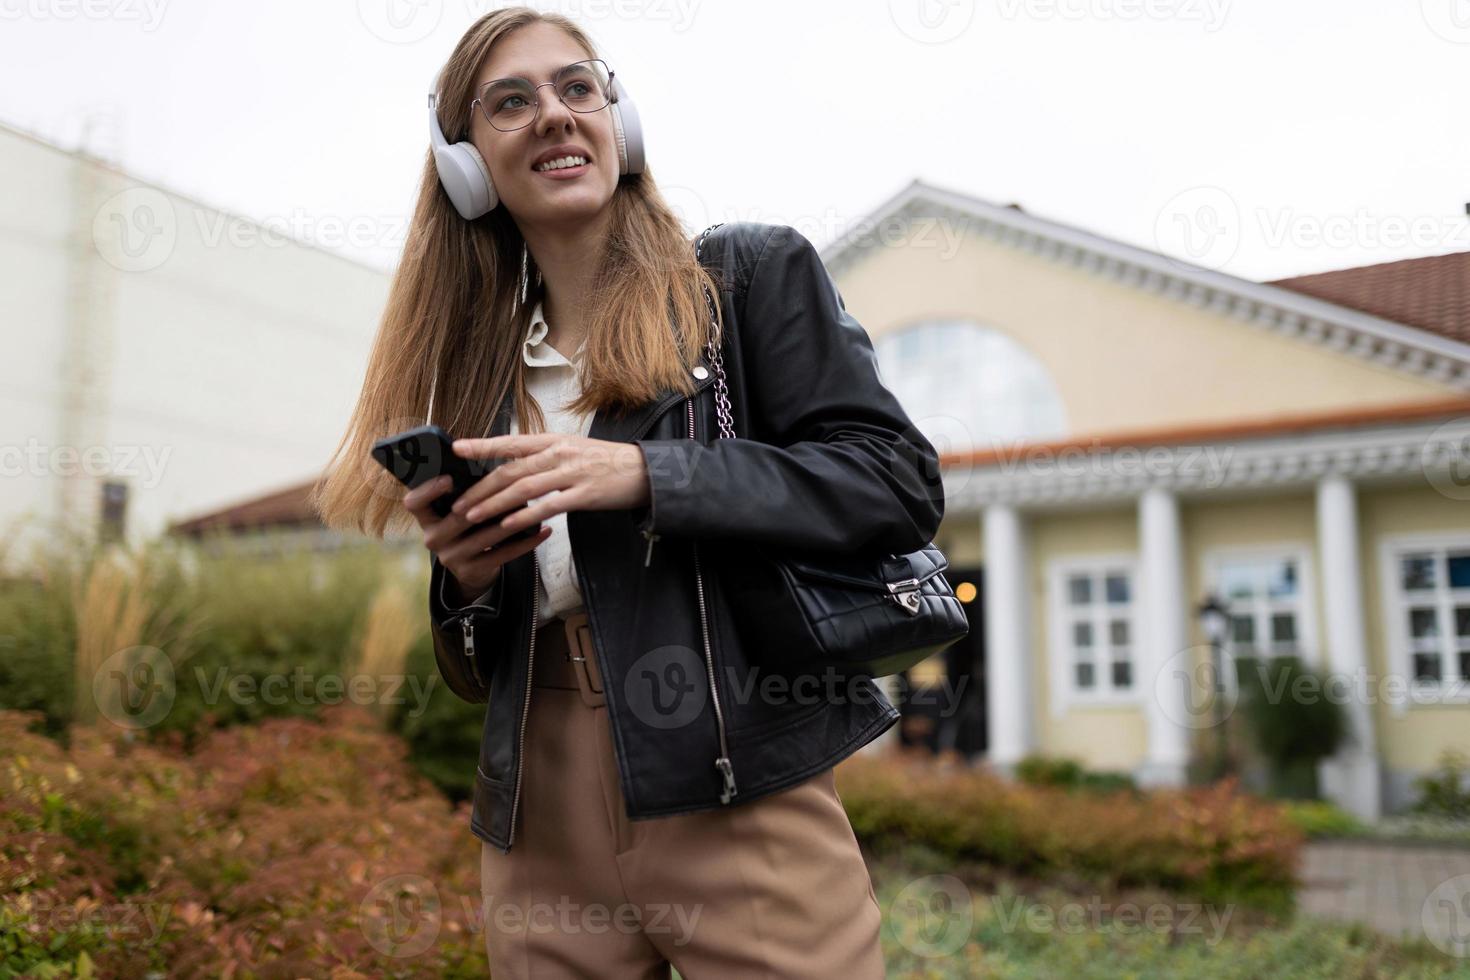 porträtt av en stark ung kvinna studerande i en läder svart jacka och hörlurar med en mobil telefon i henne händer foto